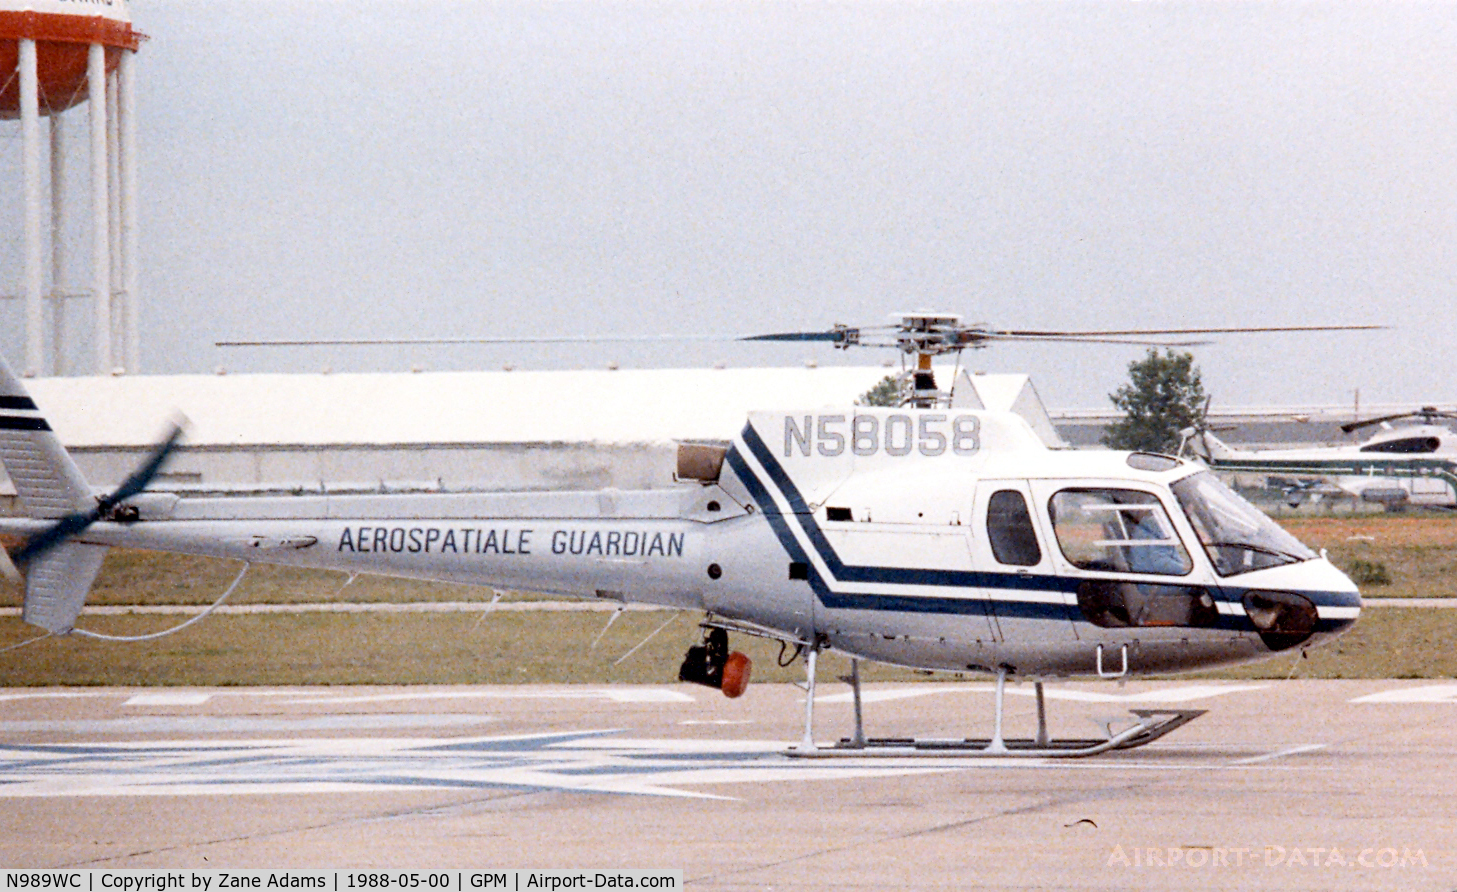 N989WC, Aerospatiale AS-350B Ecureuil C/N 1923, Registered as N58058 at Eurocopter - Grand Prairie, TX